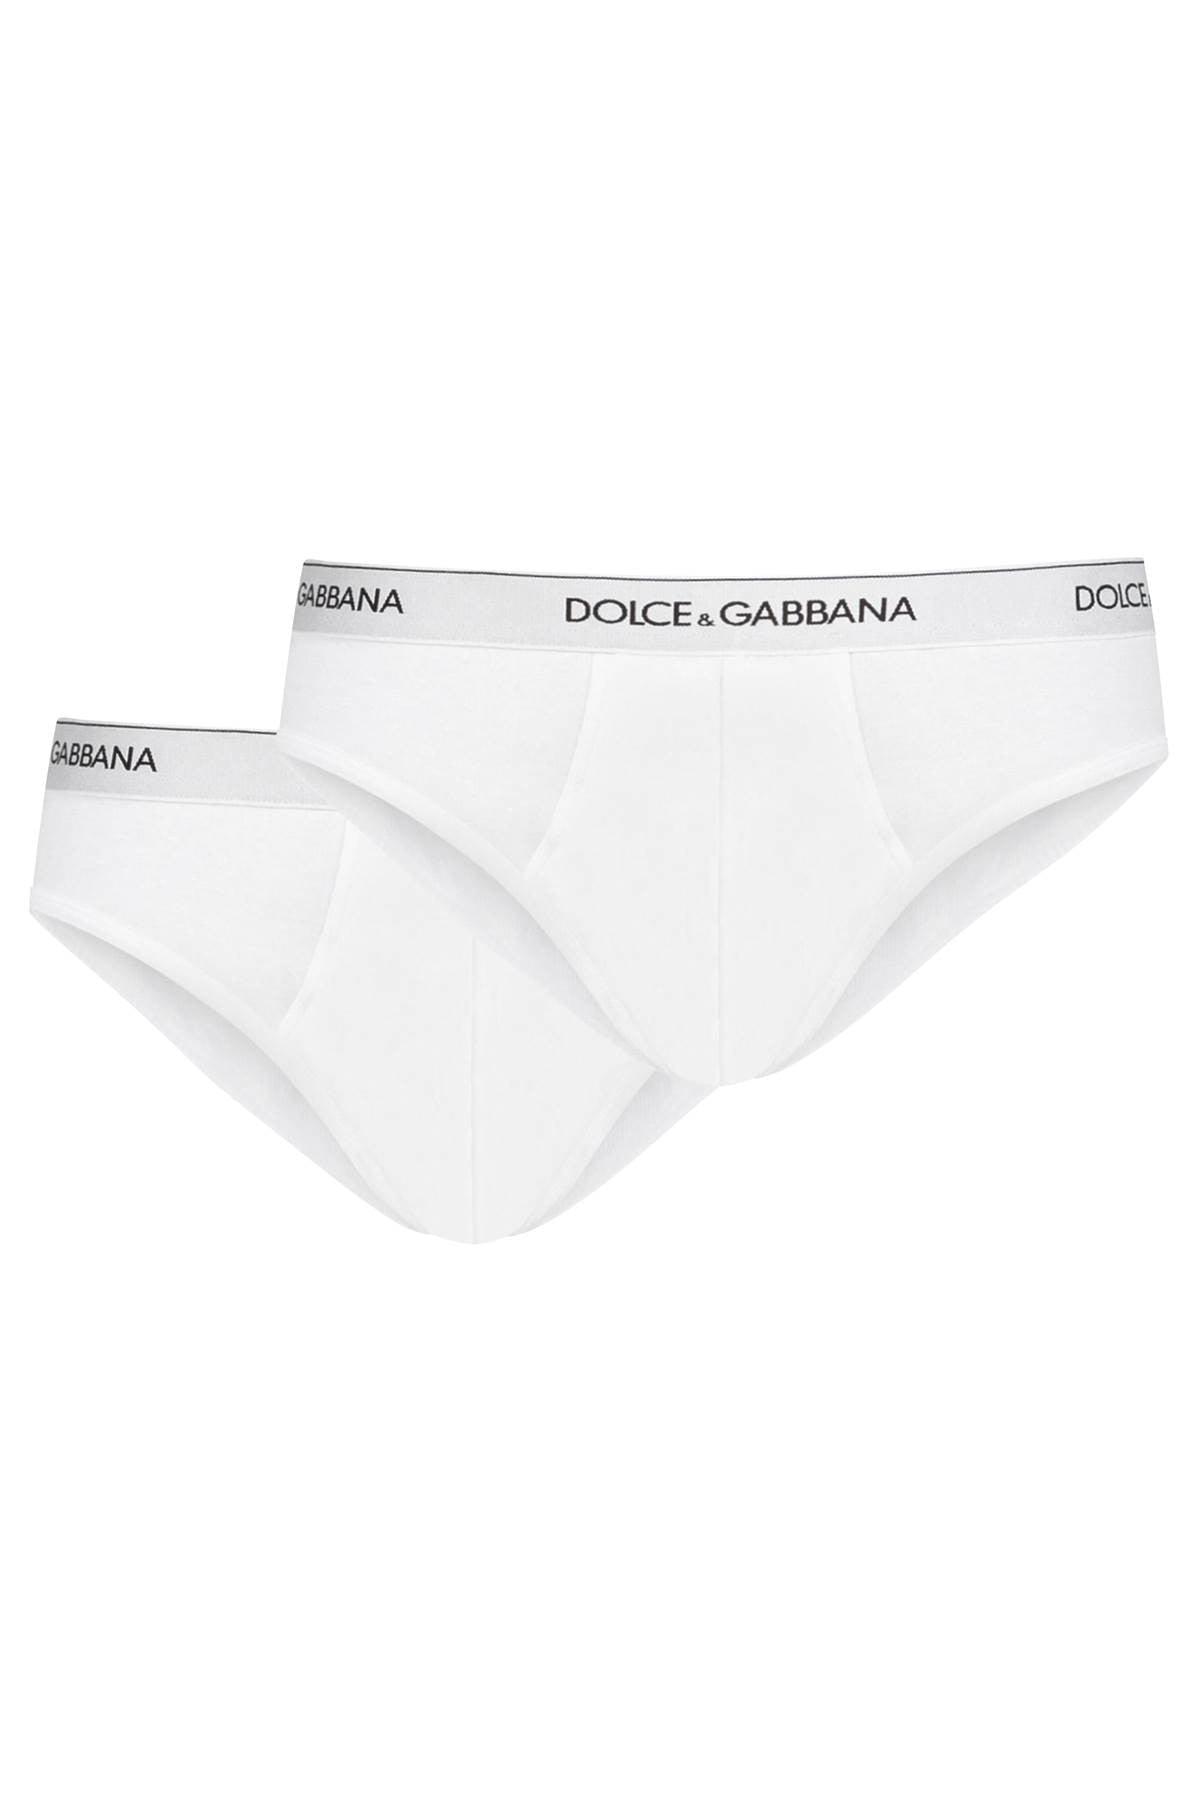 B.C. Eigenlijk erven Dolce & Gabbana Ondergoedslip Bi-pack voor heren | Lyst NL